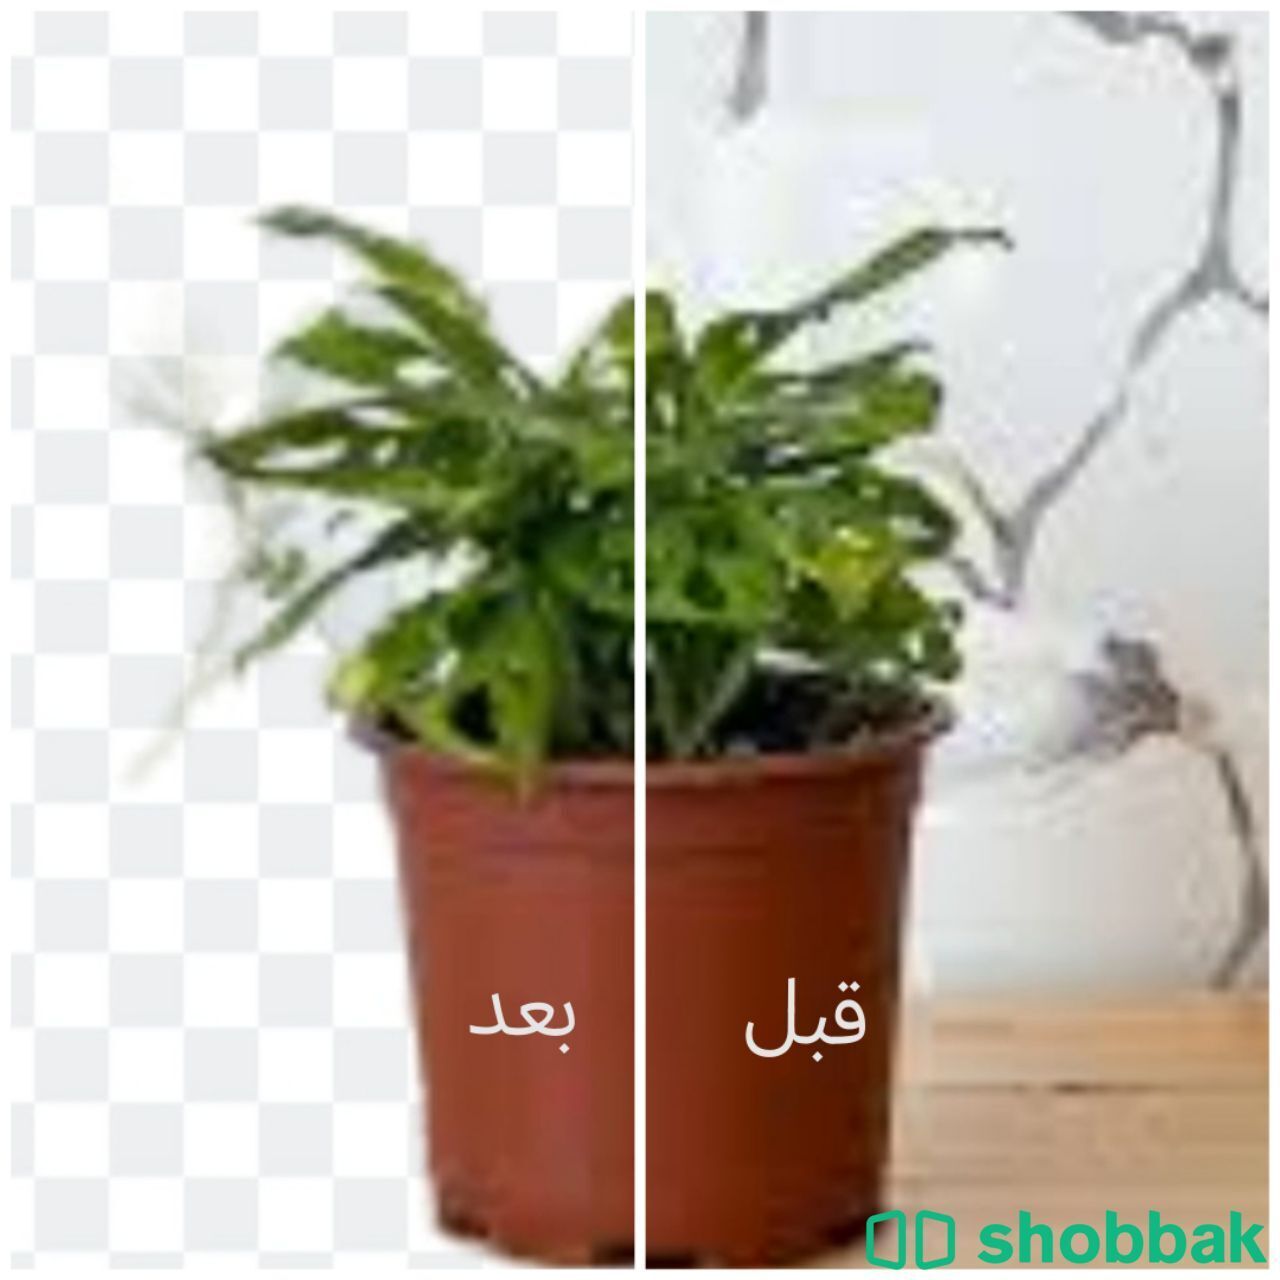 ازالة الخلفية من الصورة و زيادة جودة الصورة Shobbak Saudi Arabia